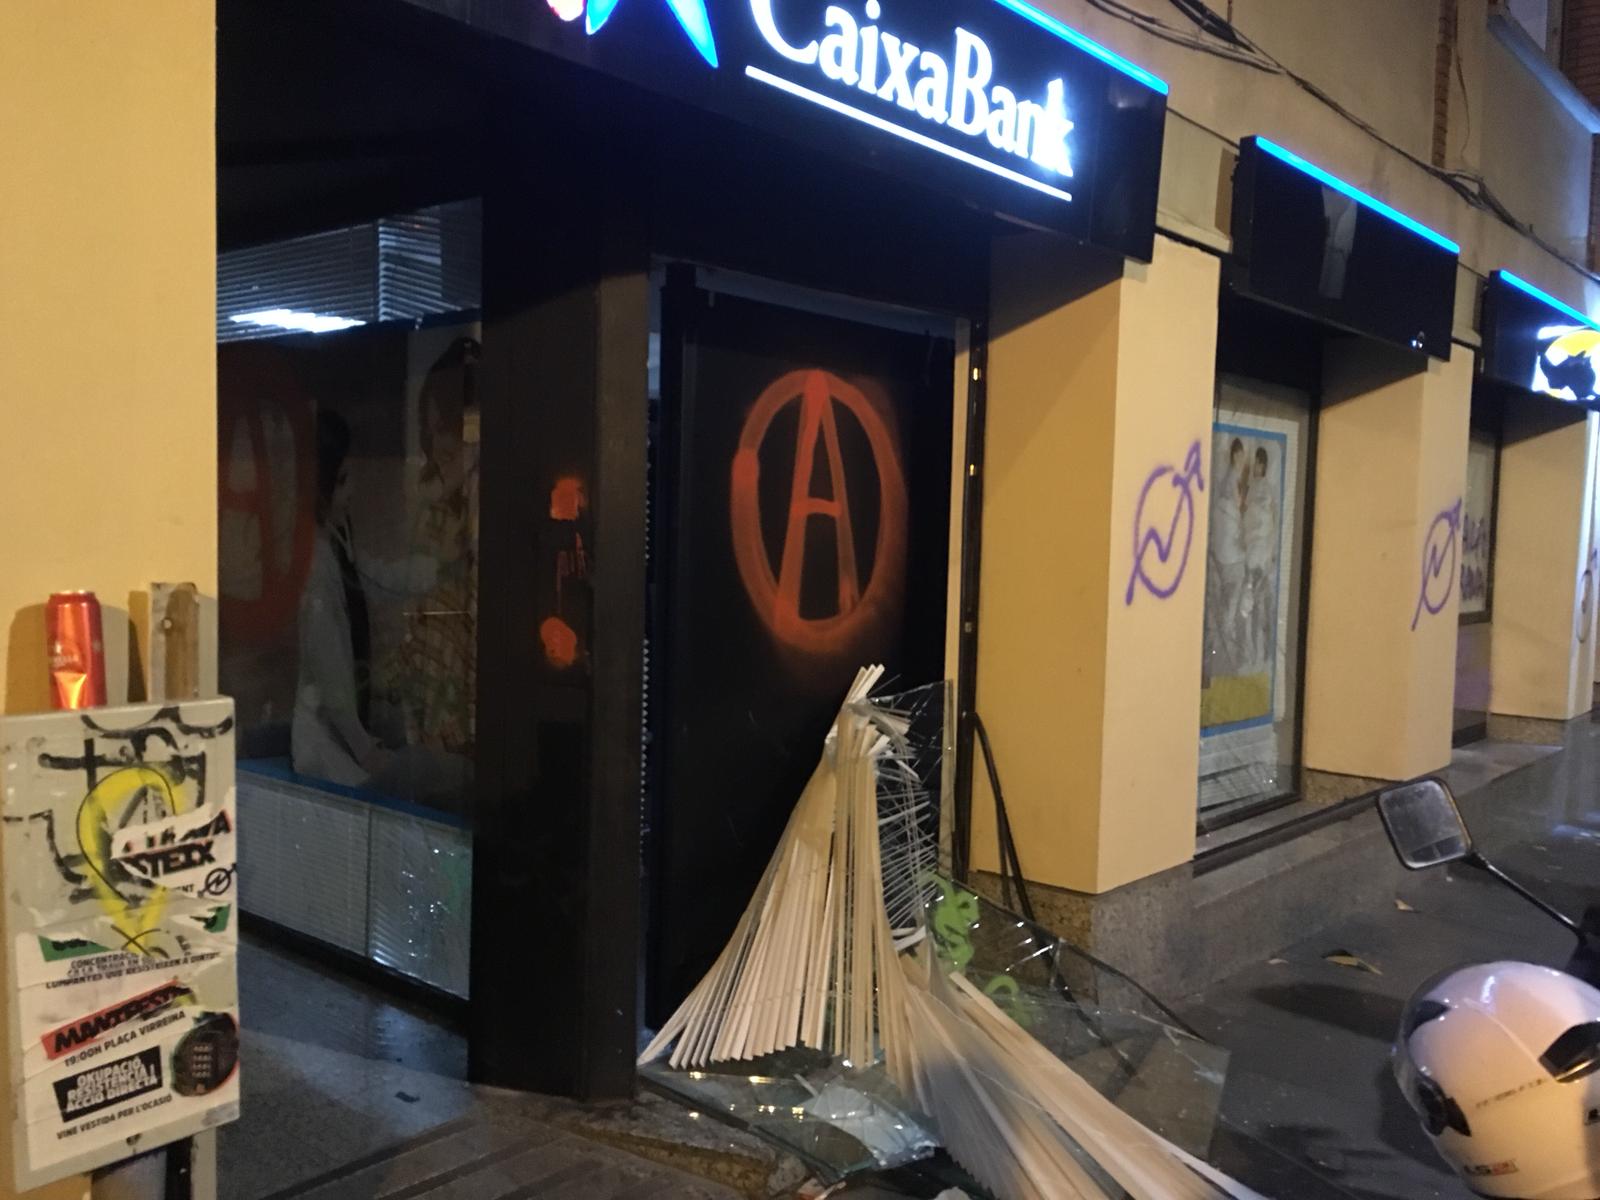 Incidentes en la manifestación de 'Ca La Trava' en Gràcia